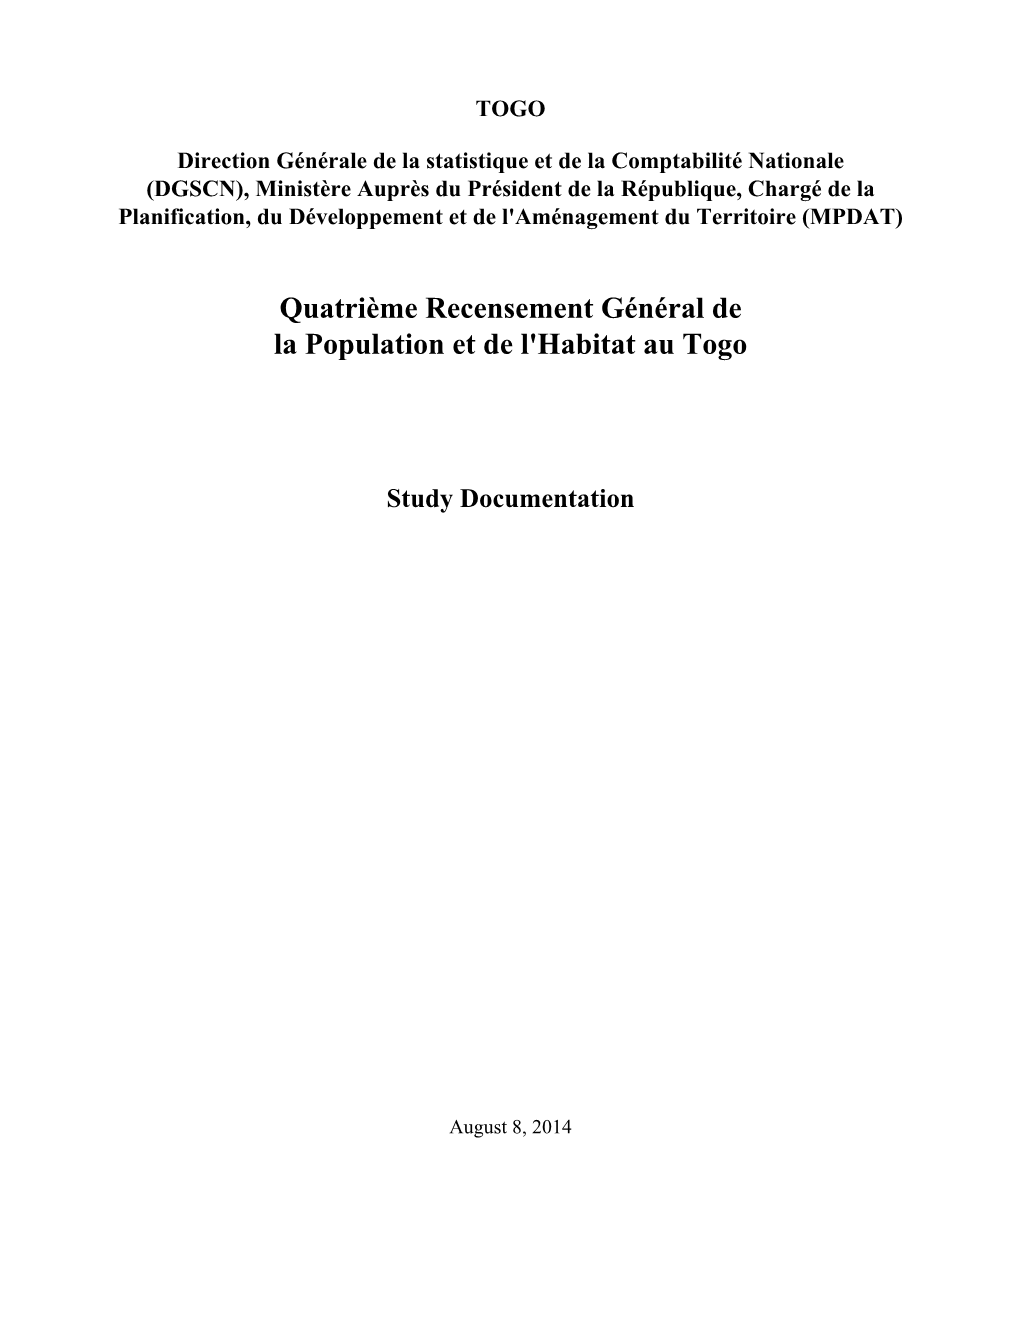 Quatrième Recensement Général De La Population Et De L'habitat Au Togo